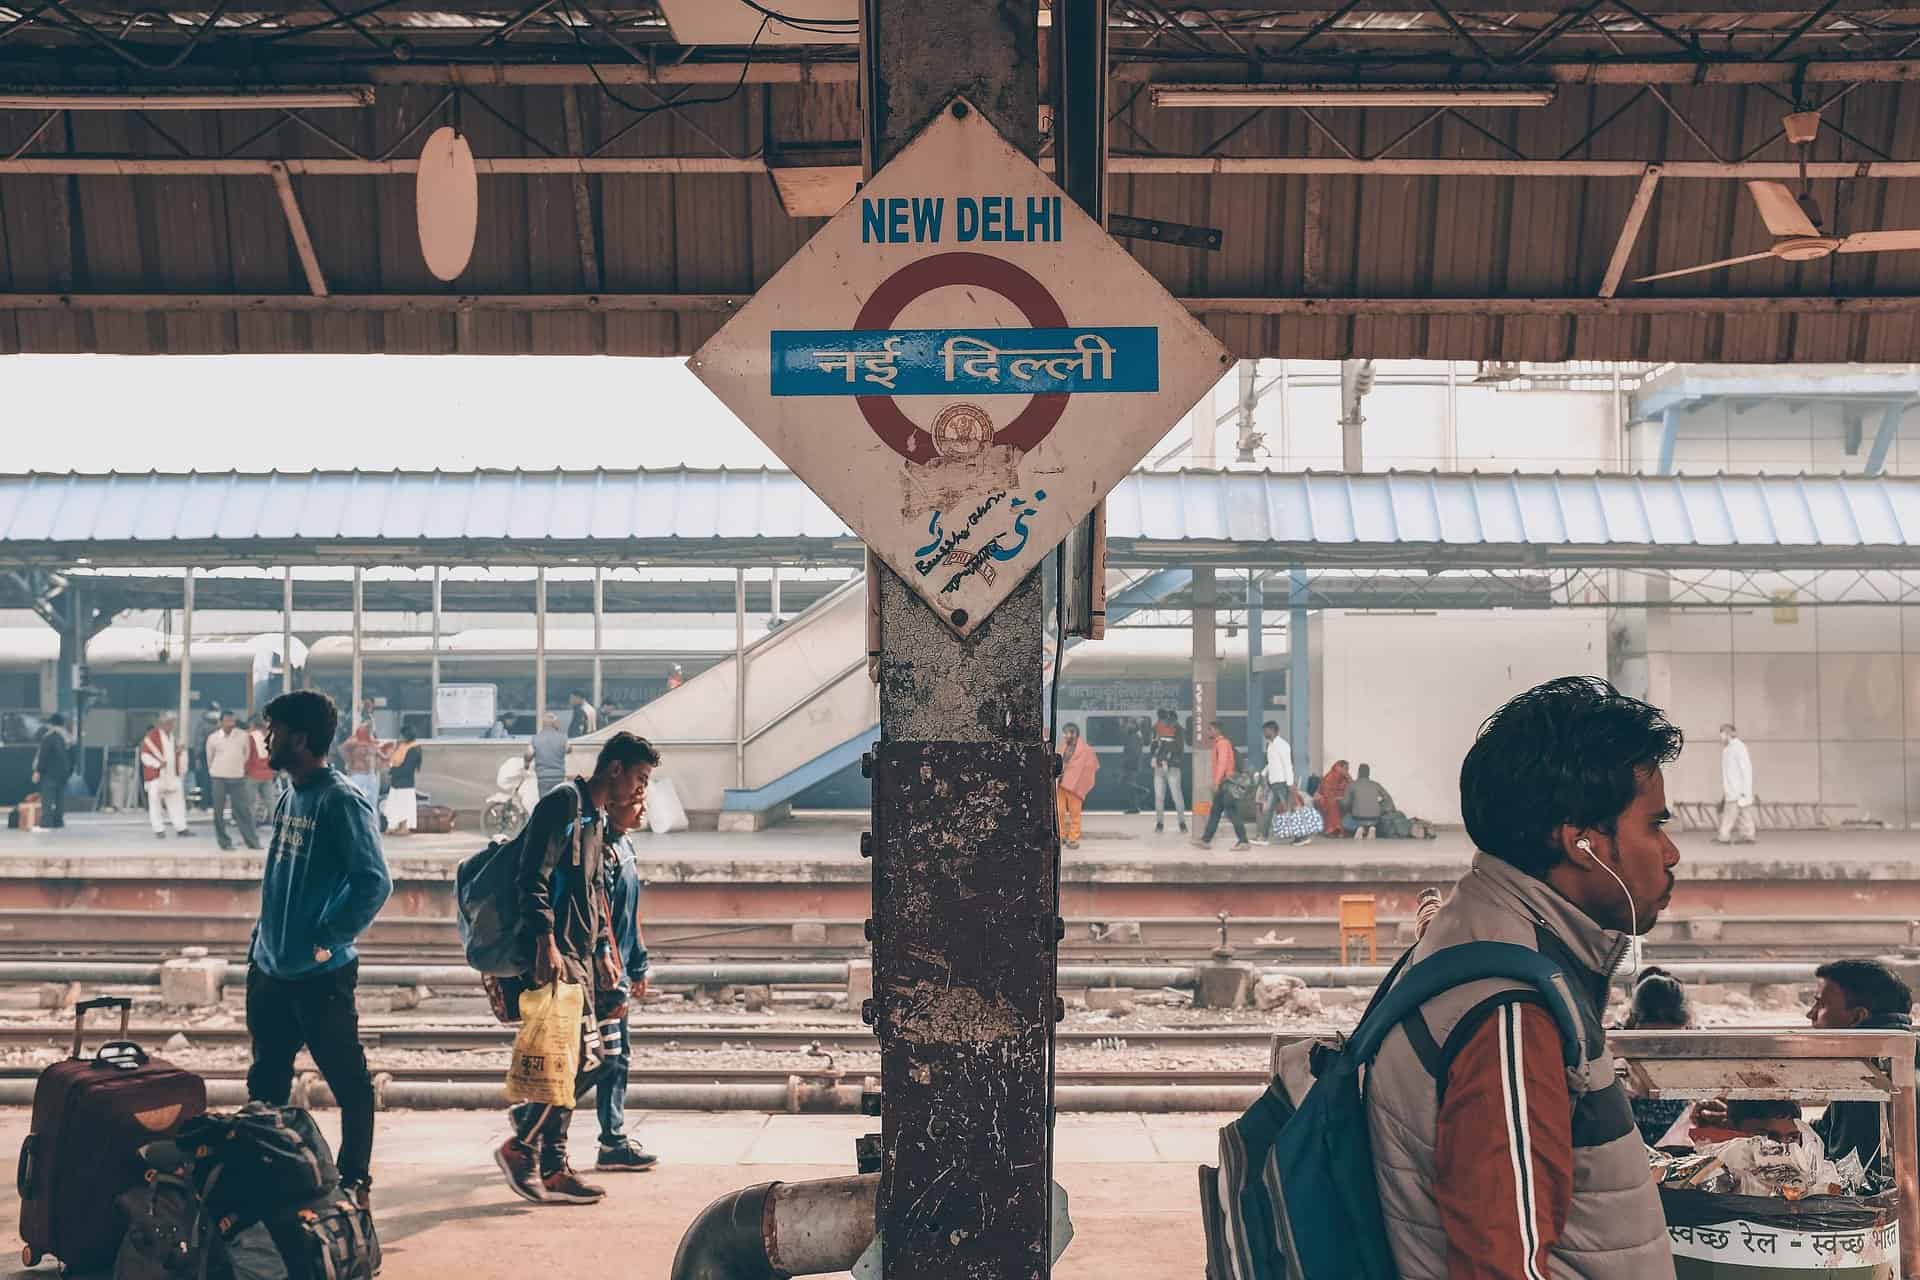 Veja como a IA ajuda a garantir que elefantes e trens não colidam na Índia